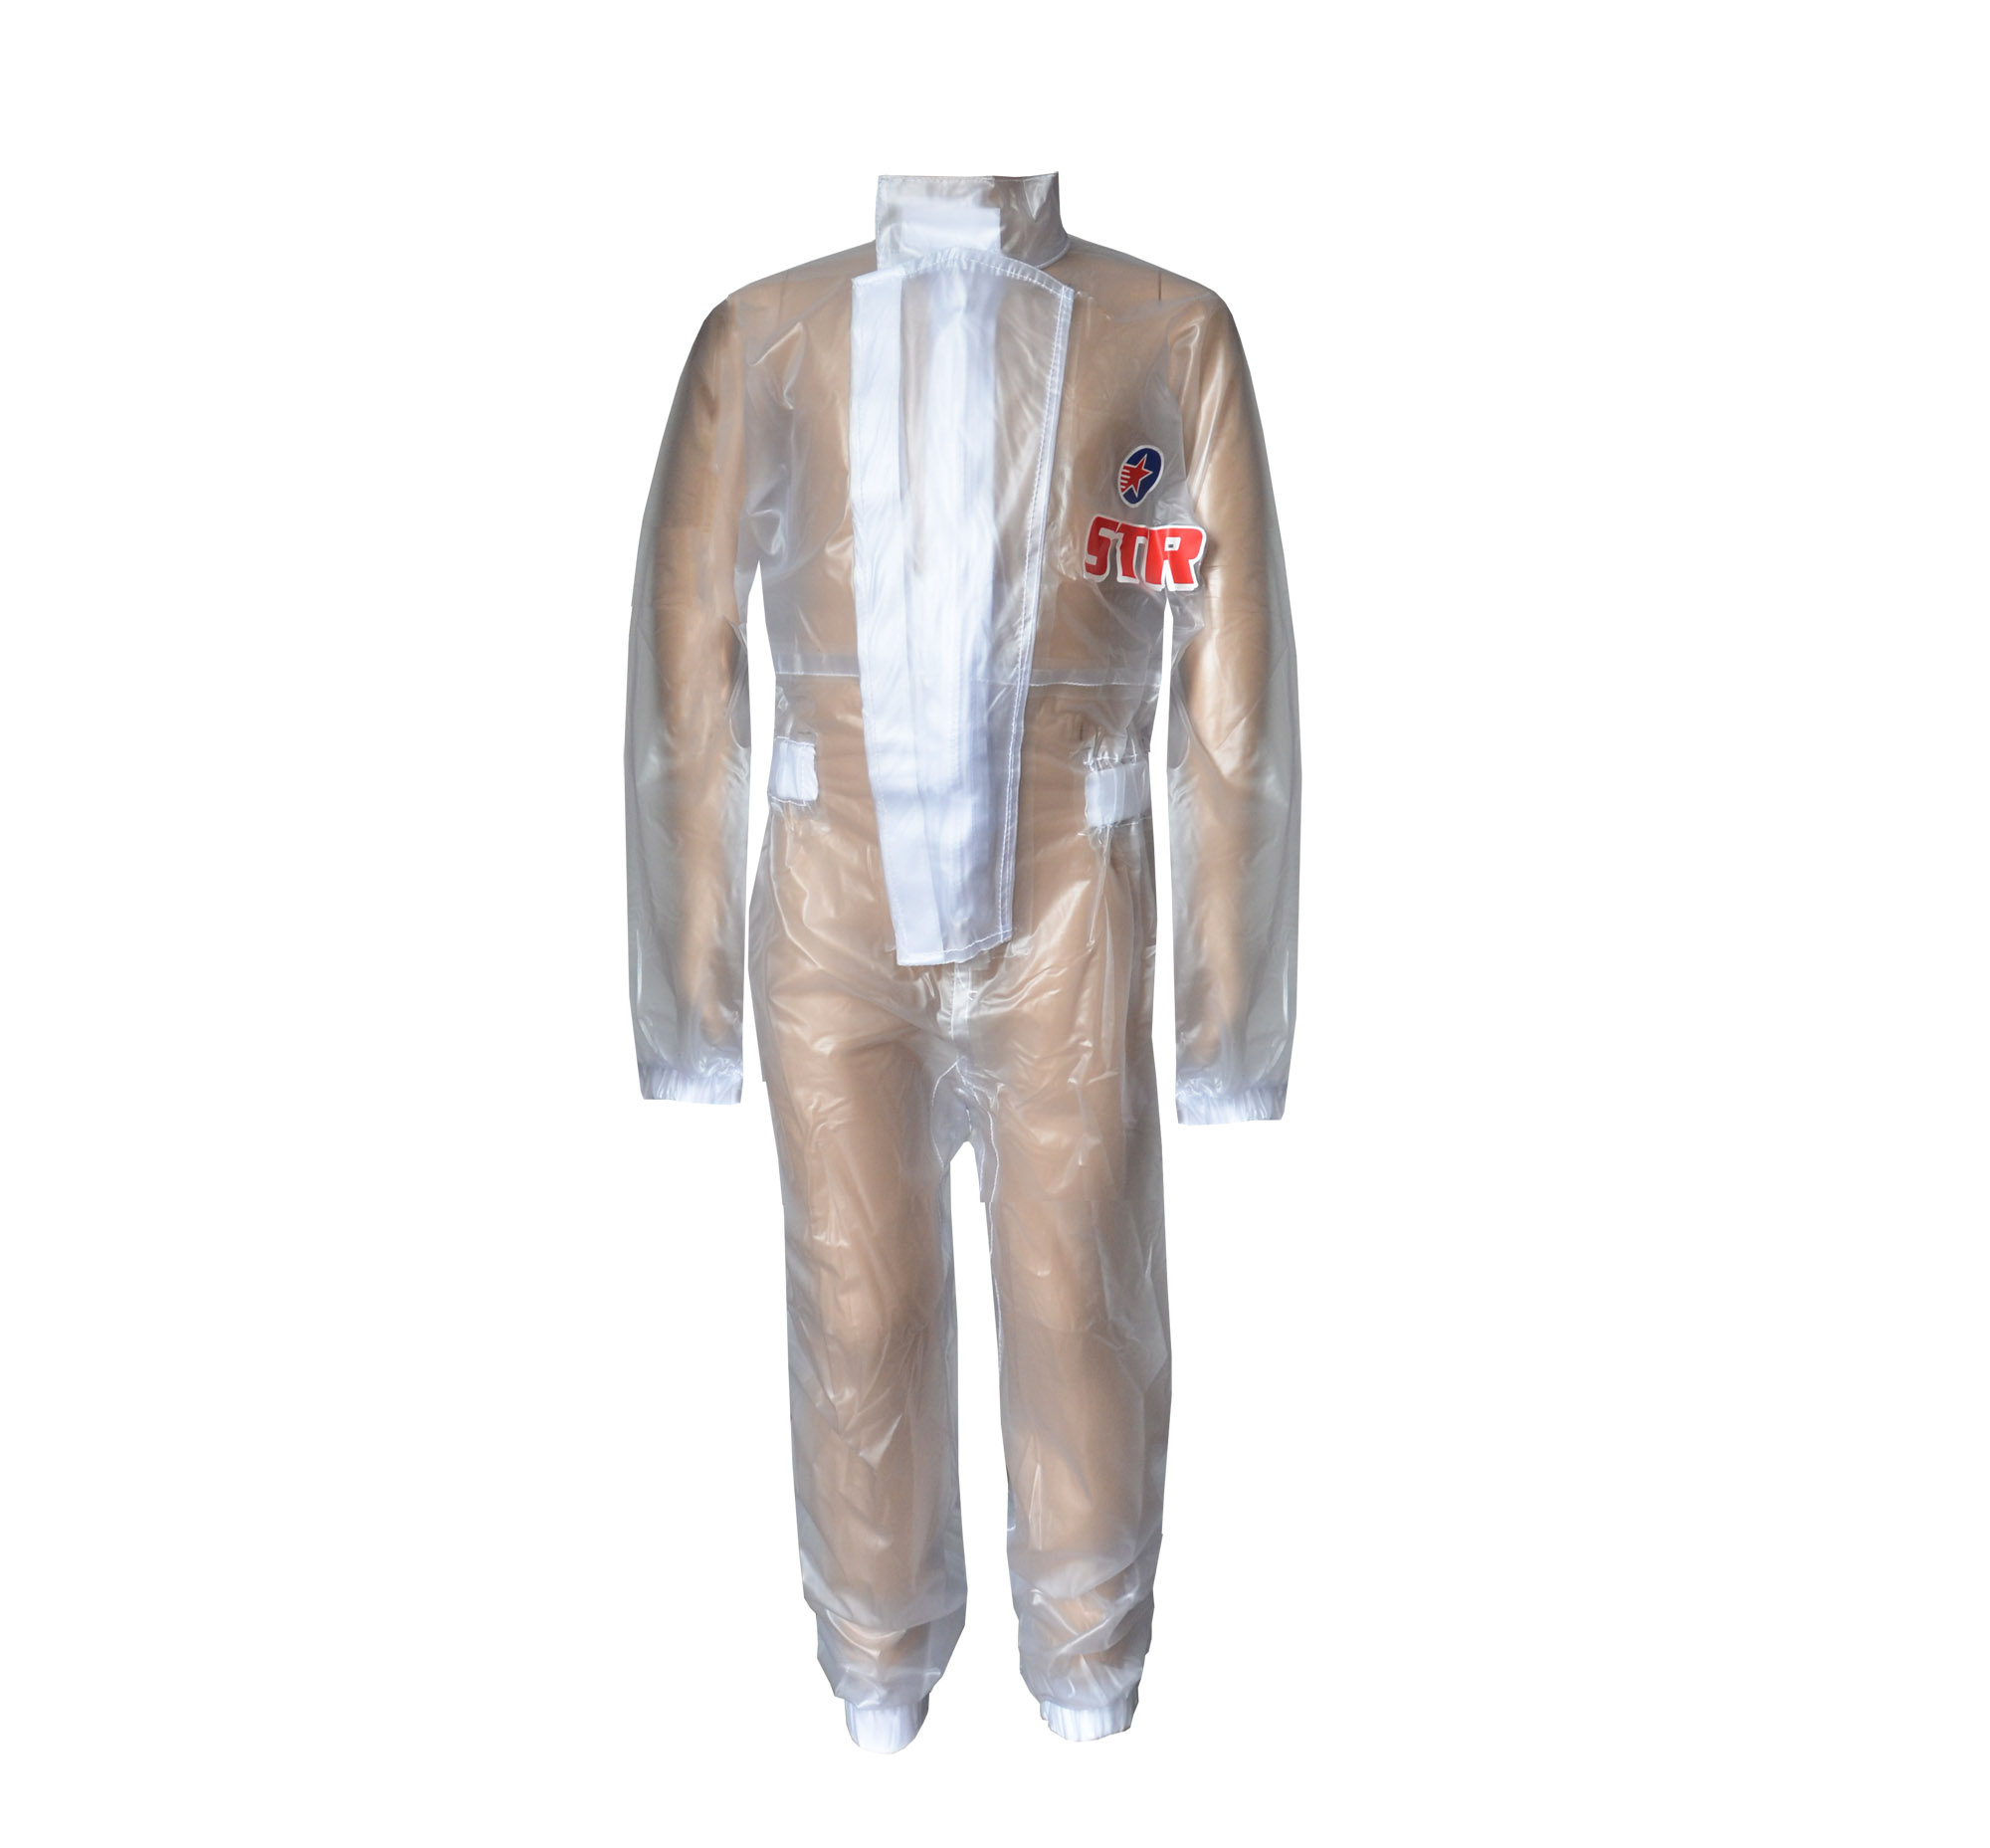 STR Wetsuit Kid Size [Wet Rain Suit]